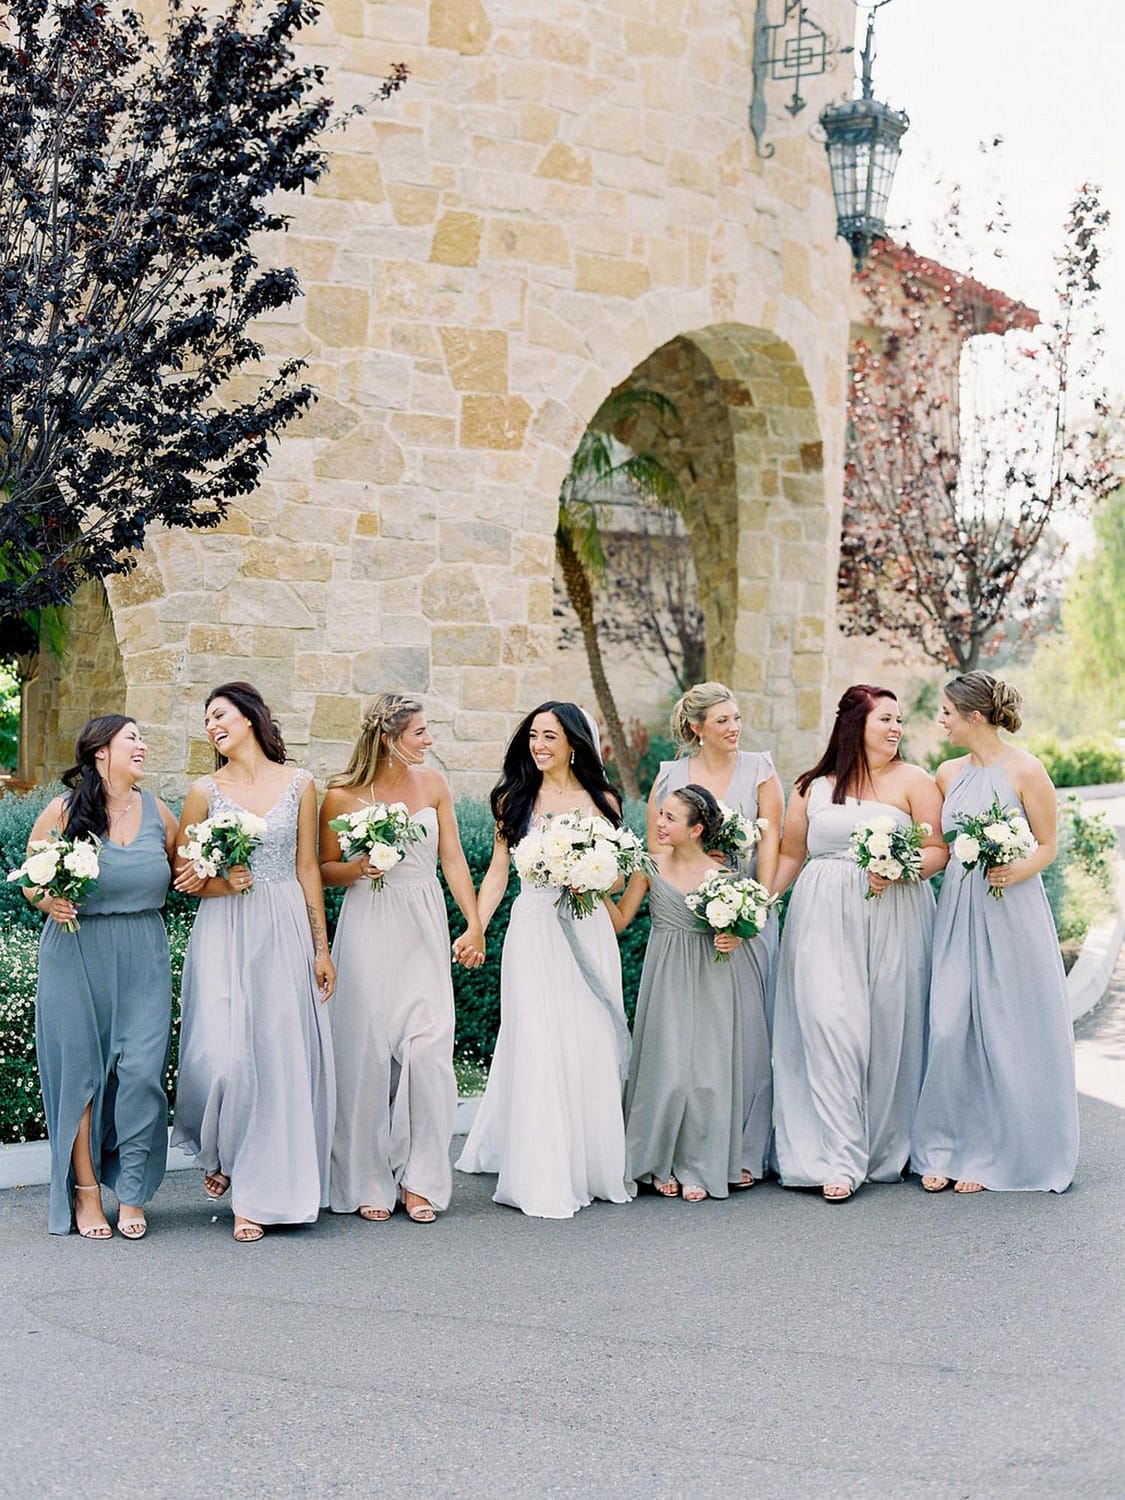 Braut mit Brautjungfern in grauen und silbernen Kleidern